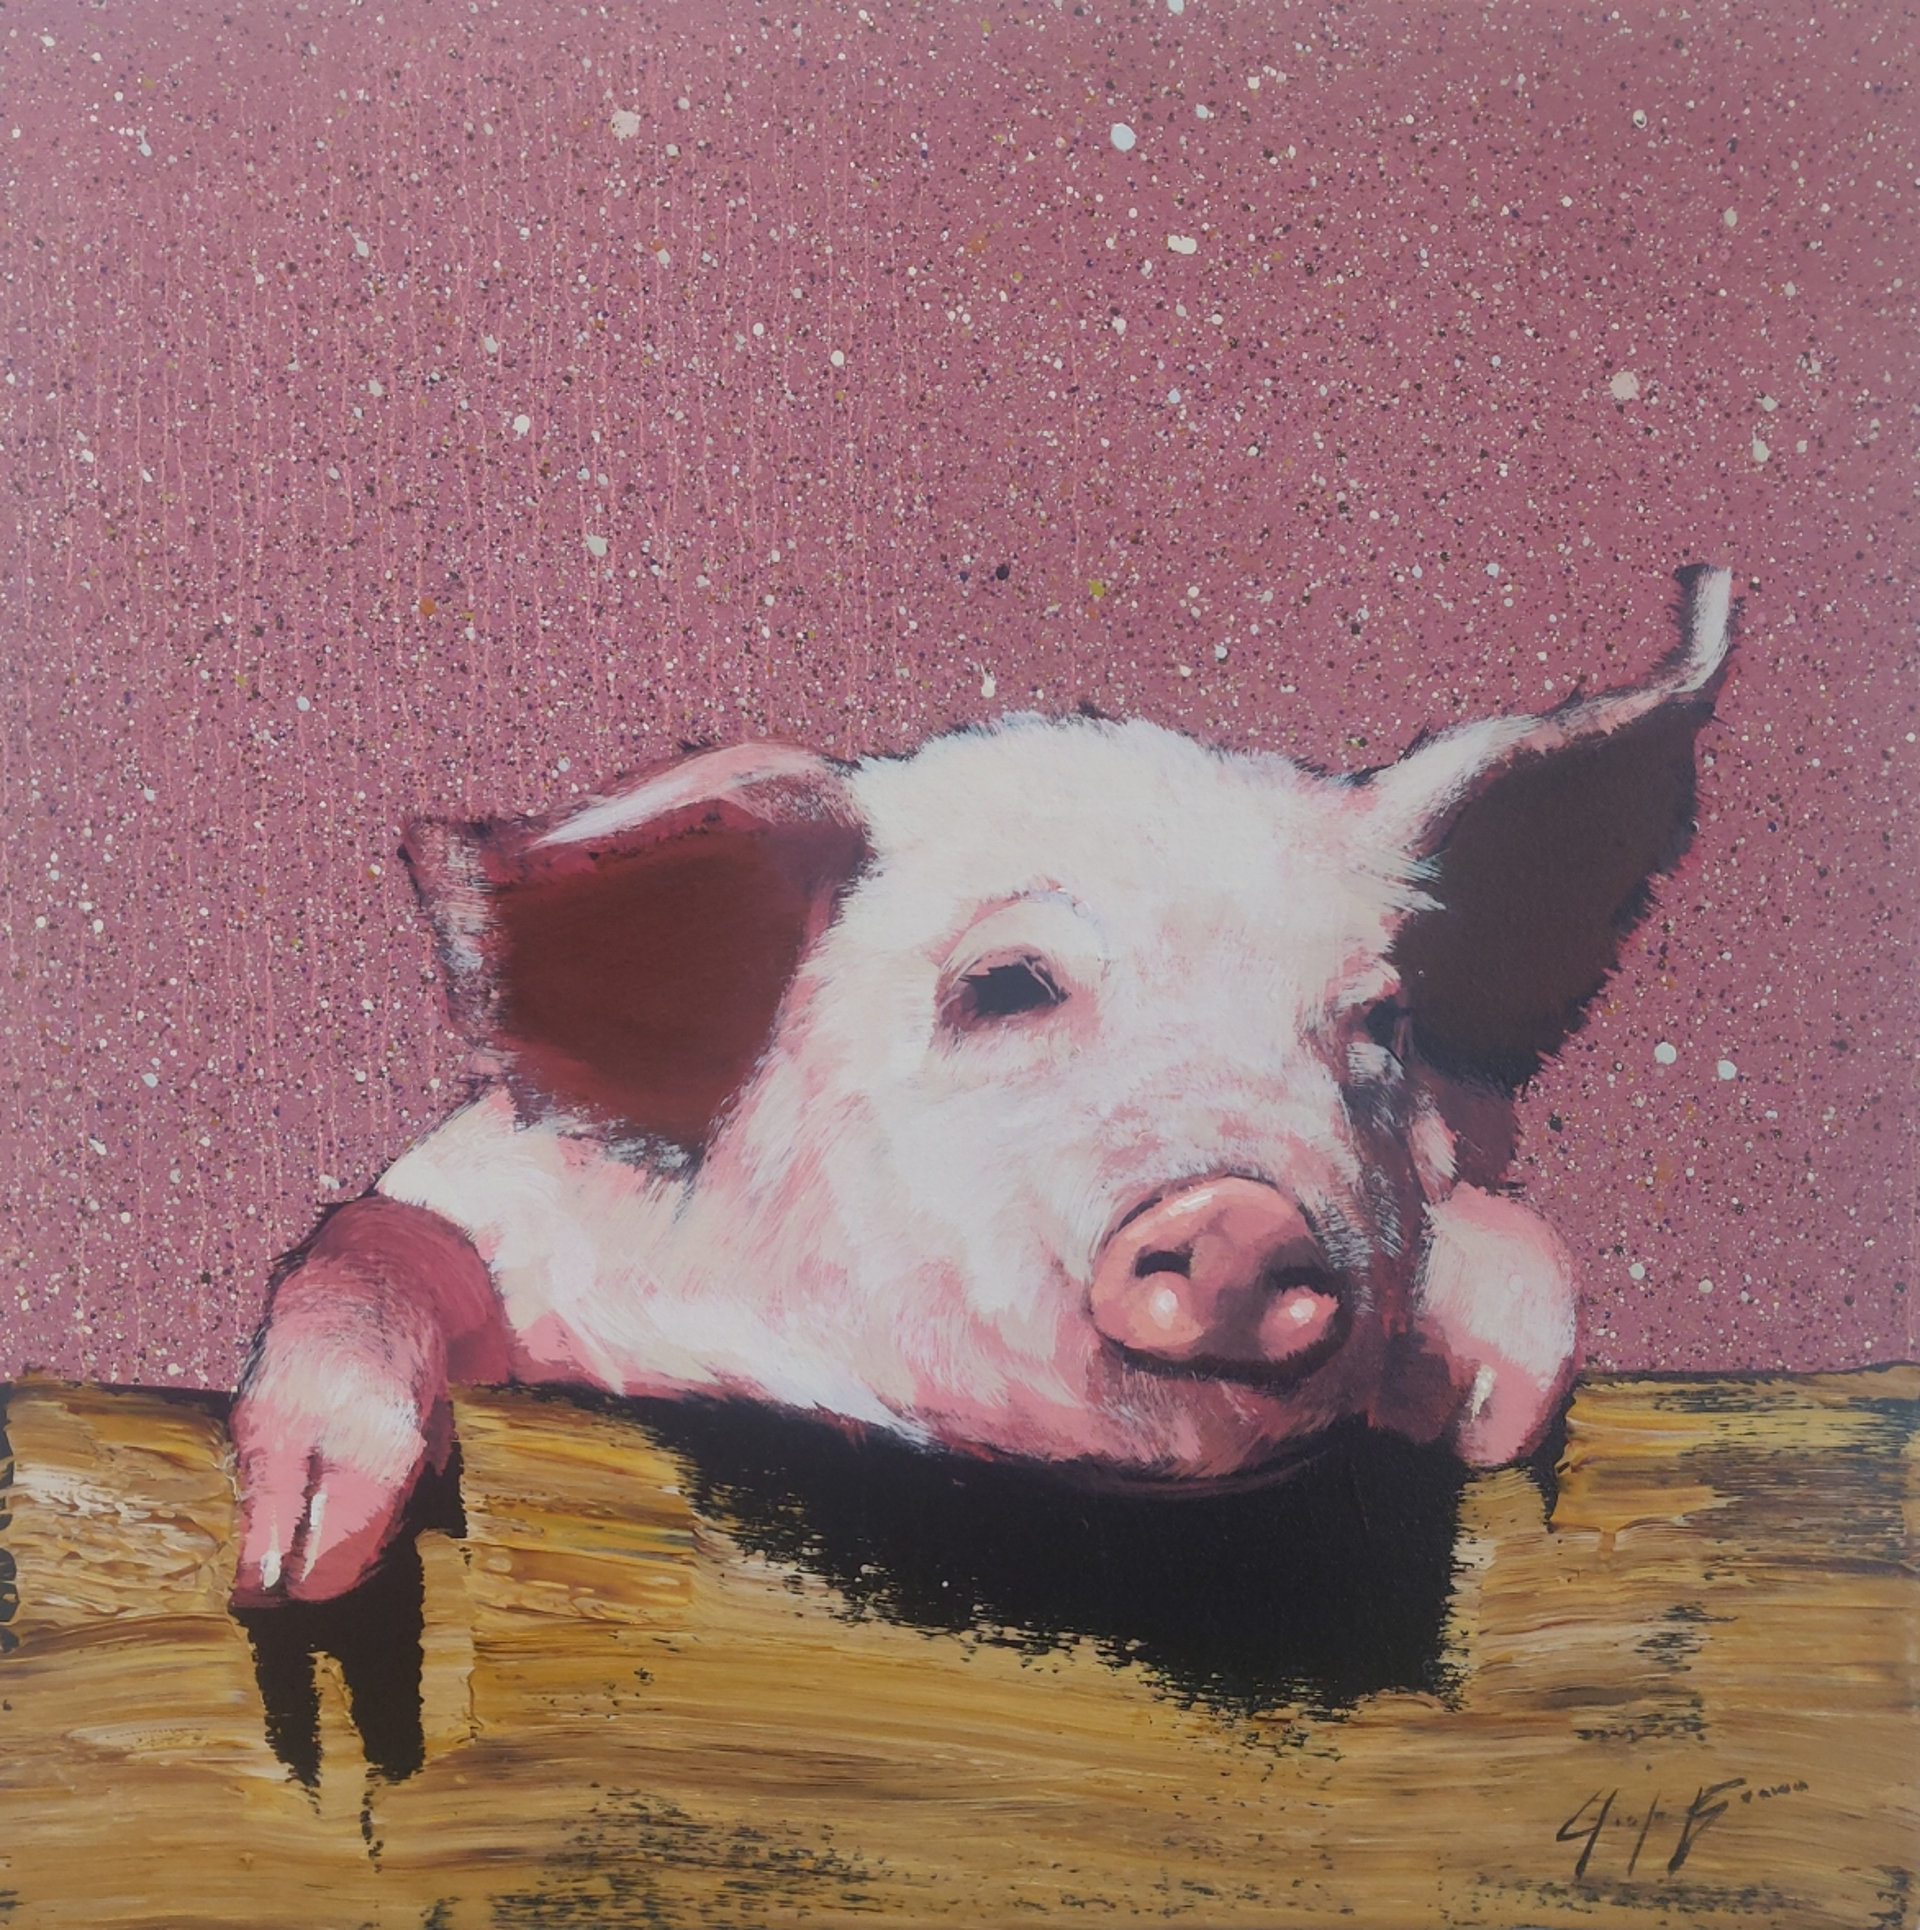 Happy Pig on Alizarin Sprinkles by Josh Brown